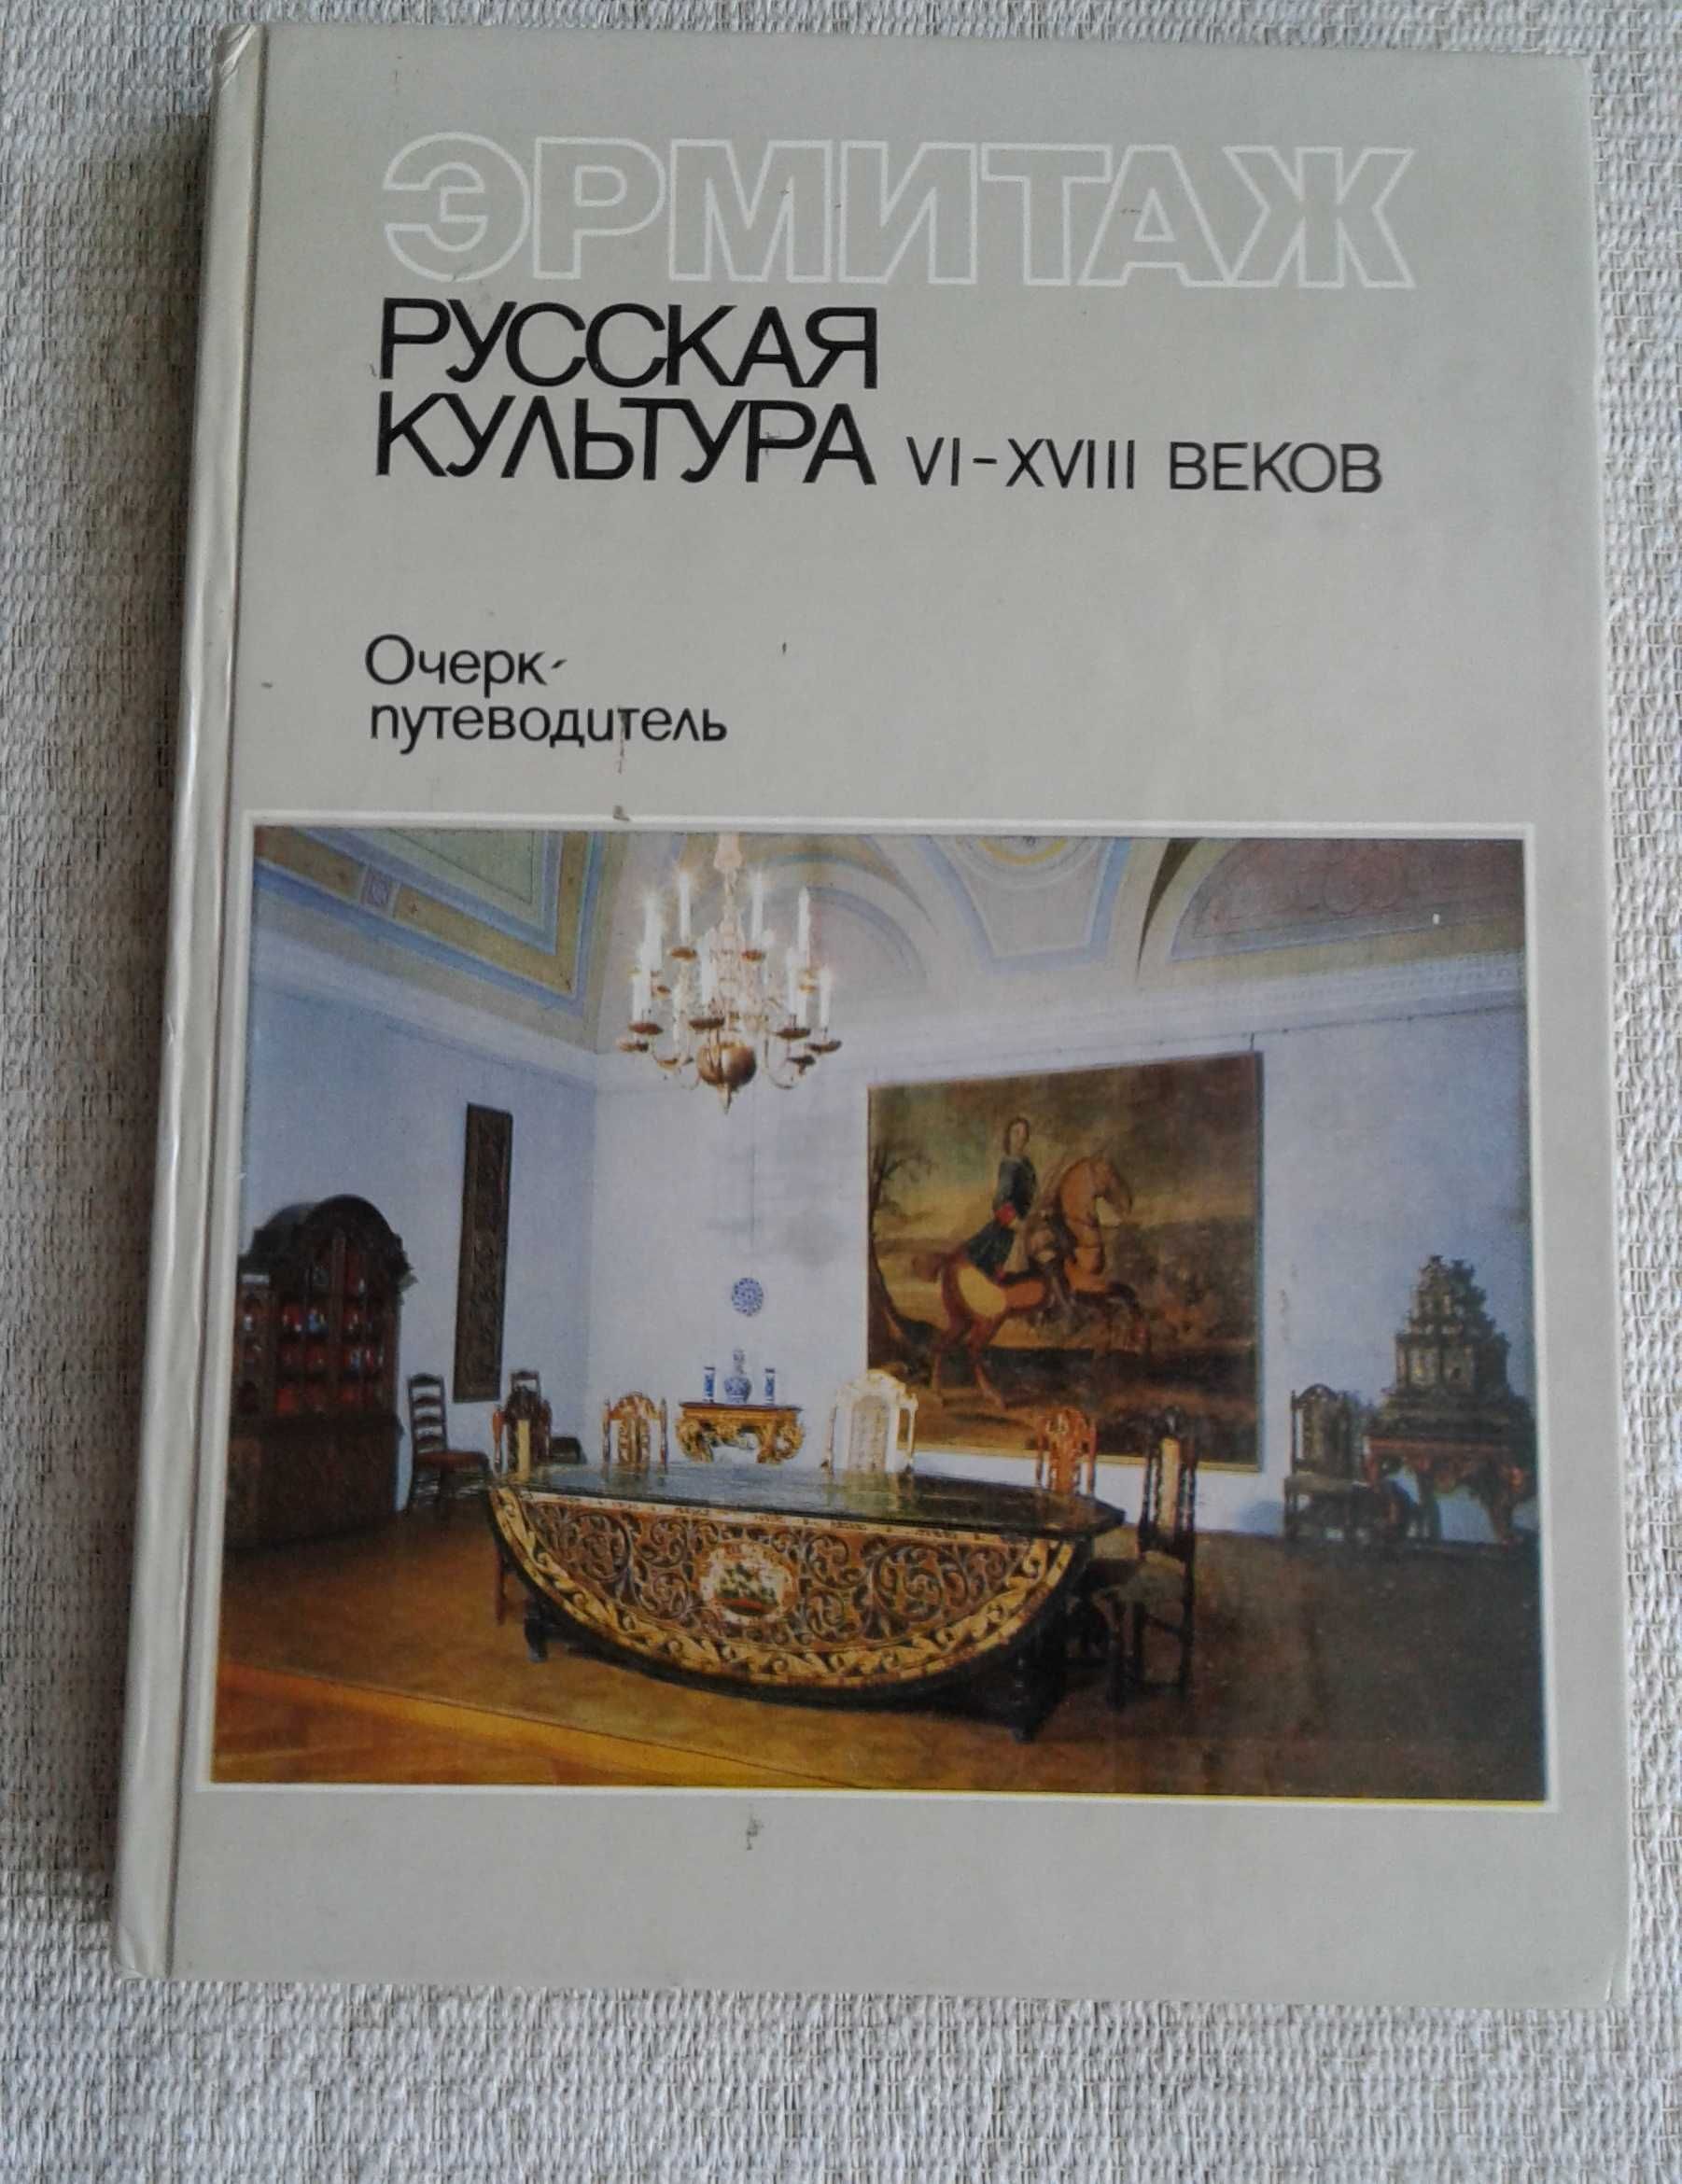 9 красочных книг о музеях Ленинграда-Петербурга = 240 грн за все